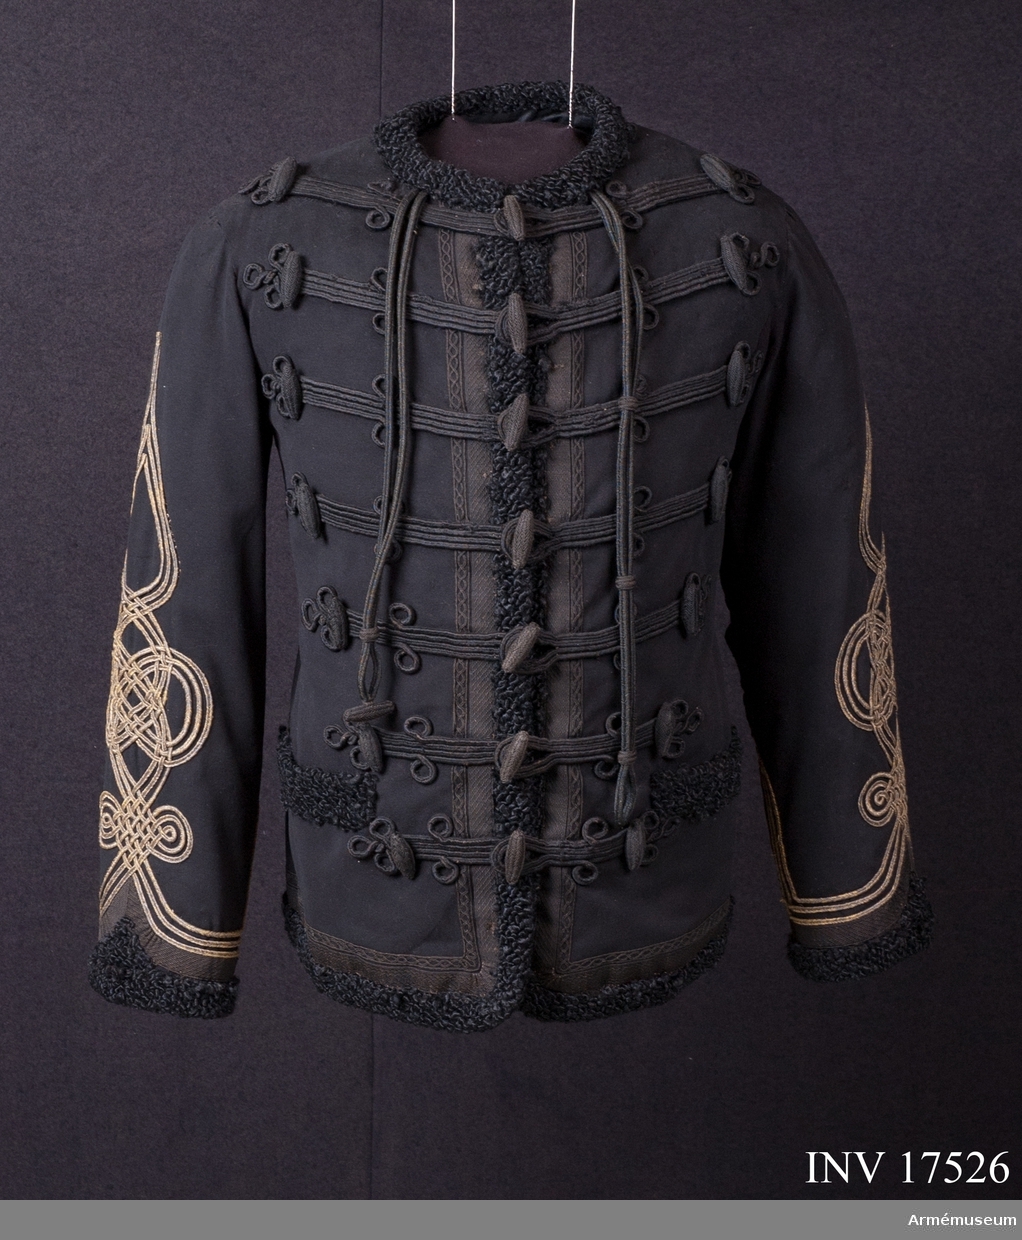 Grupp C I.
Uniformen buren av general Rappe såsom kapten i fransk-tyska kriget 1870-71.
Av svart kläde, 68 cm lång, enradig med sju svarta, avlånga knappar. På bröstets båda sidor finns sju knappar, svarta avlånga, i rad och sju rader knäppsnören av svart bomull. Längs knäppningen på bröstet, runt nederkanten, vid två fickor rockens framsida och på två inskärningar på baksidan finns det beläggningar av svart fårskinn. Parallellt med dessa beläggningar går en svart silkesgalon bred och smal. På ryggen finns beläggningar av olika svarta galoner på båda sidorna. På ryggens övre del och i mitten finns broderier av svart silke. Krage. I stället för kragen en utskärning med svart fårskinnsremsa omkring. Uppslag i vinkelform omsytt med samma svarta skinn och silkesband. Längs hela armen är det en stor beläggning i form av en ungersk knut av tre guldsnören. Fodret är av svart tyg med många lappar av silkestyg. Längs hela armen är det en stor beläggning i form av en ungersk knut av tre guldsnören. Fodret är av svart tyg med många lappar av silkestyg. På bröstet finns två innerfickor.
LITT  Svenska adelns ättarravlor. Kapten, friherre A Rappe tjänstgjorde vid franska generalstaben åren 1870-72. Denna dolma tillhör kapten vid generalstaben. Knuten på ärmar av  tre guldsnören betecknar kaptens grad.
Enl "Handbuch der Uniformenkunde", Knötel-Sieg, Hamburg 1937, sida 189. År 1867 infördes för generalstabsofficerare svart dolma med fem svarta bröstsnören och på ärmarna svarta, ungerska knutar. Troligen blev de sedan förändrade; i stället för fem blev det sju snören och de ungerska knutarna på ärmarna blev av guldsnören.